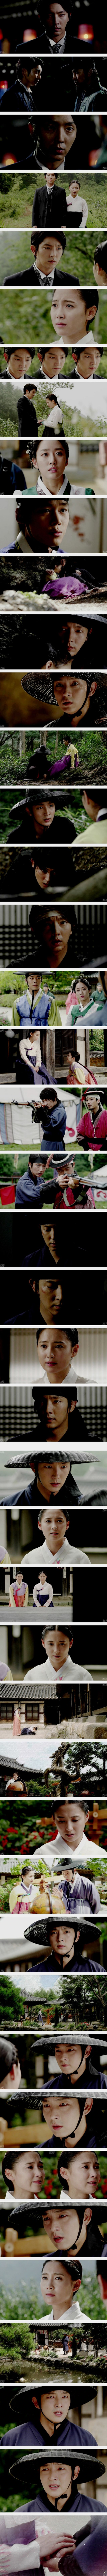 episode 19 captures for the Korean drama 'The Joseon Shooter'